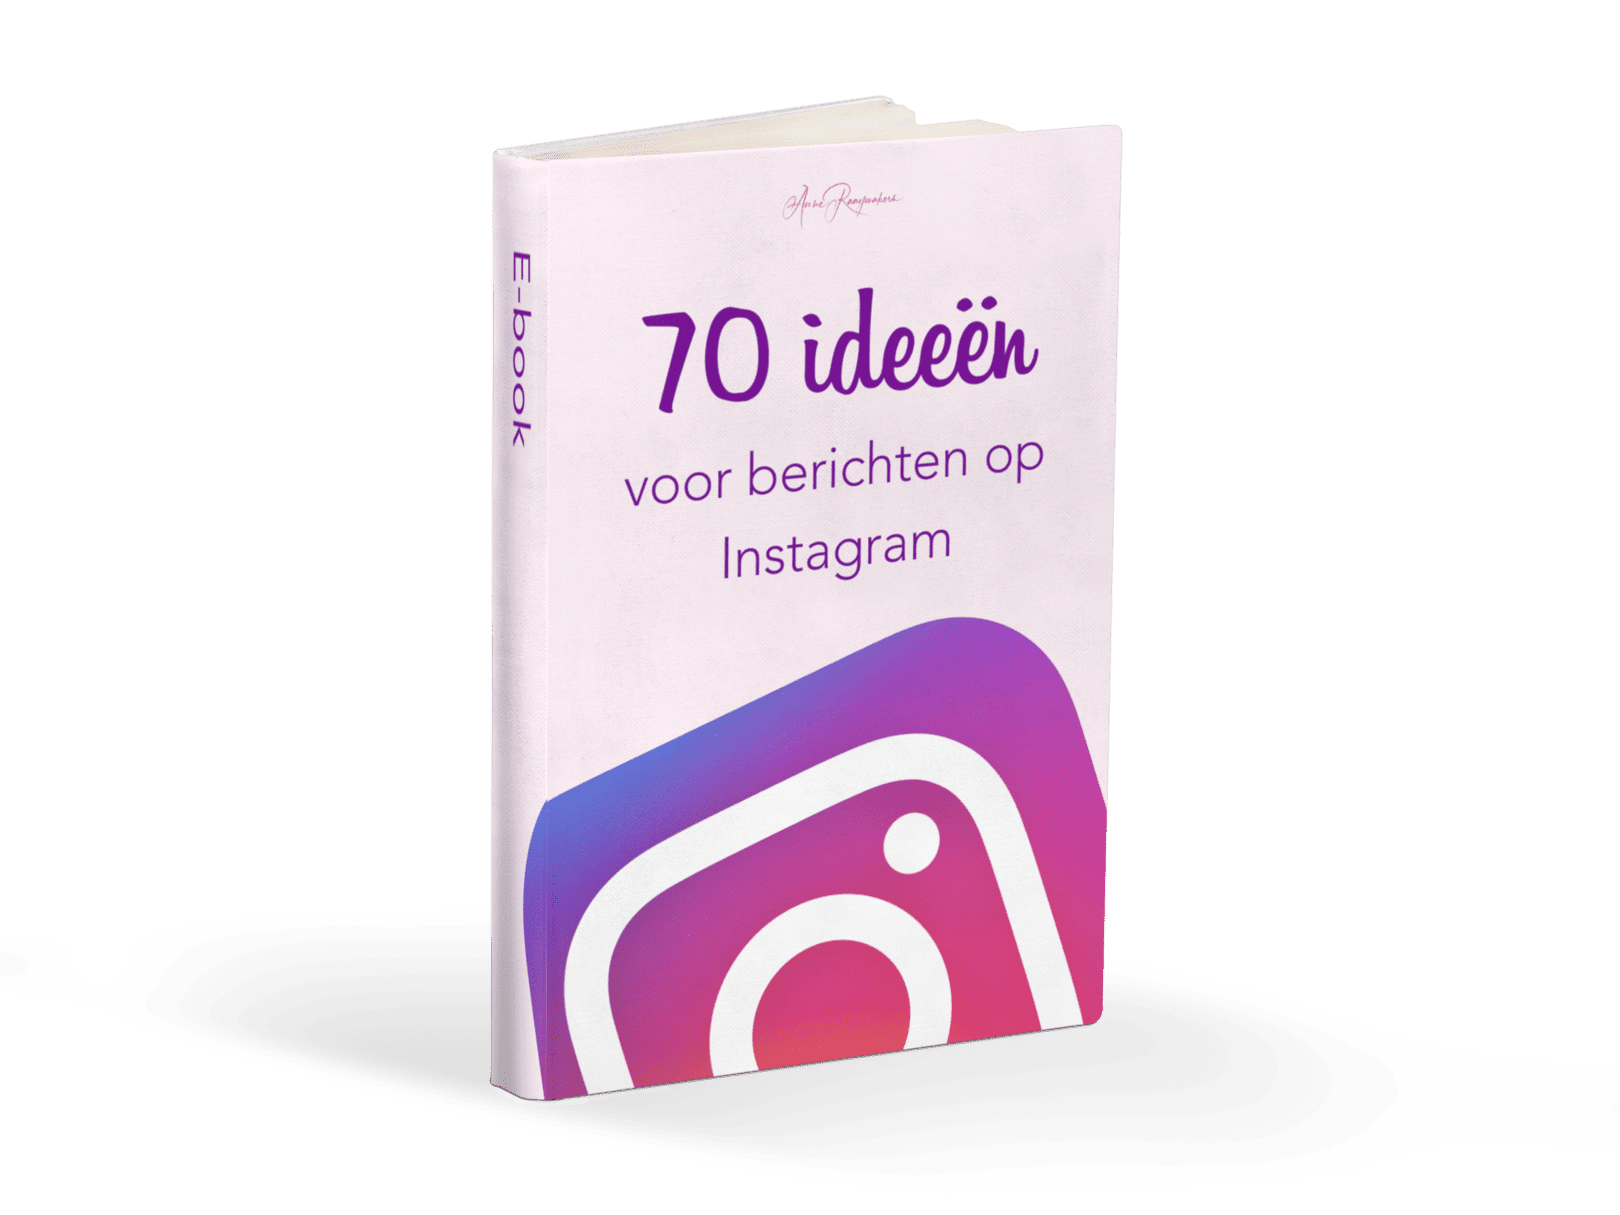 70 ideeën voor berichten op Instagram